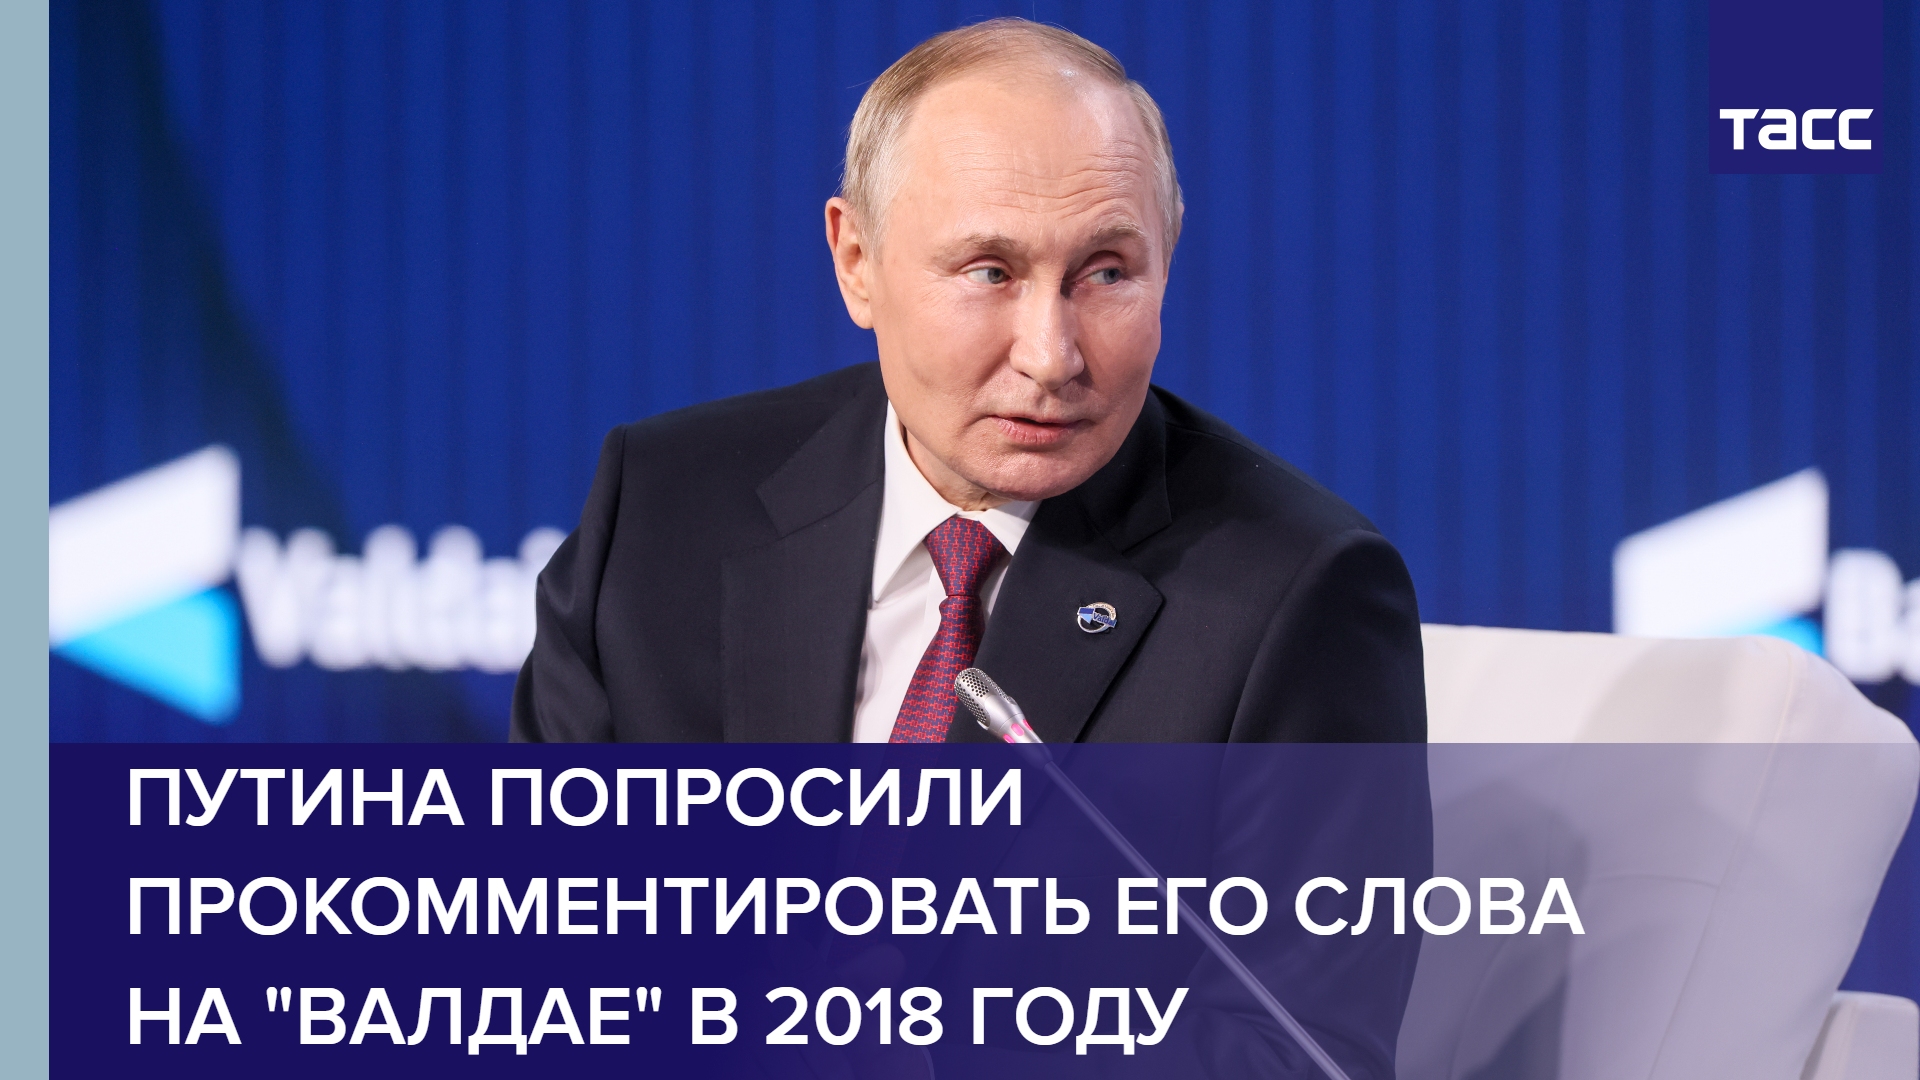 Путина попросили прокомментировать его слова на "Валдае" в 2018 году #shorts